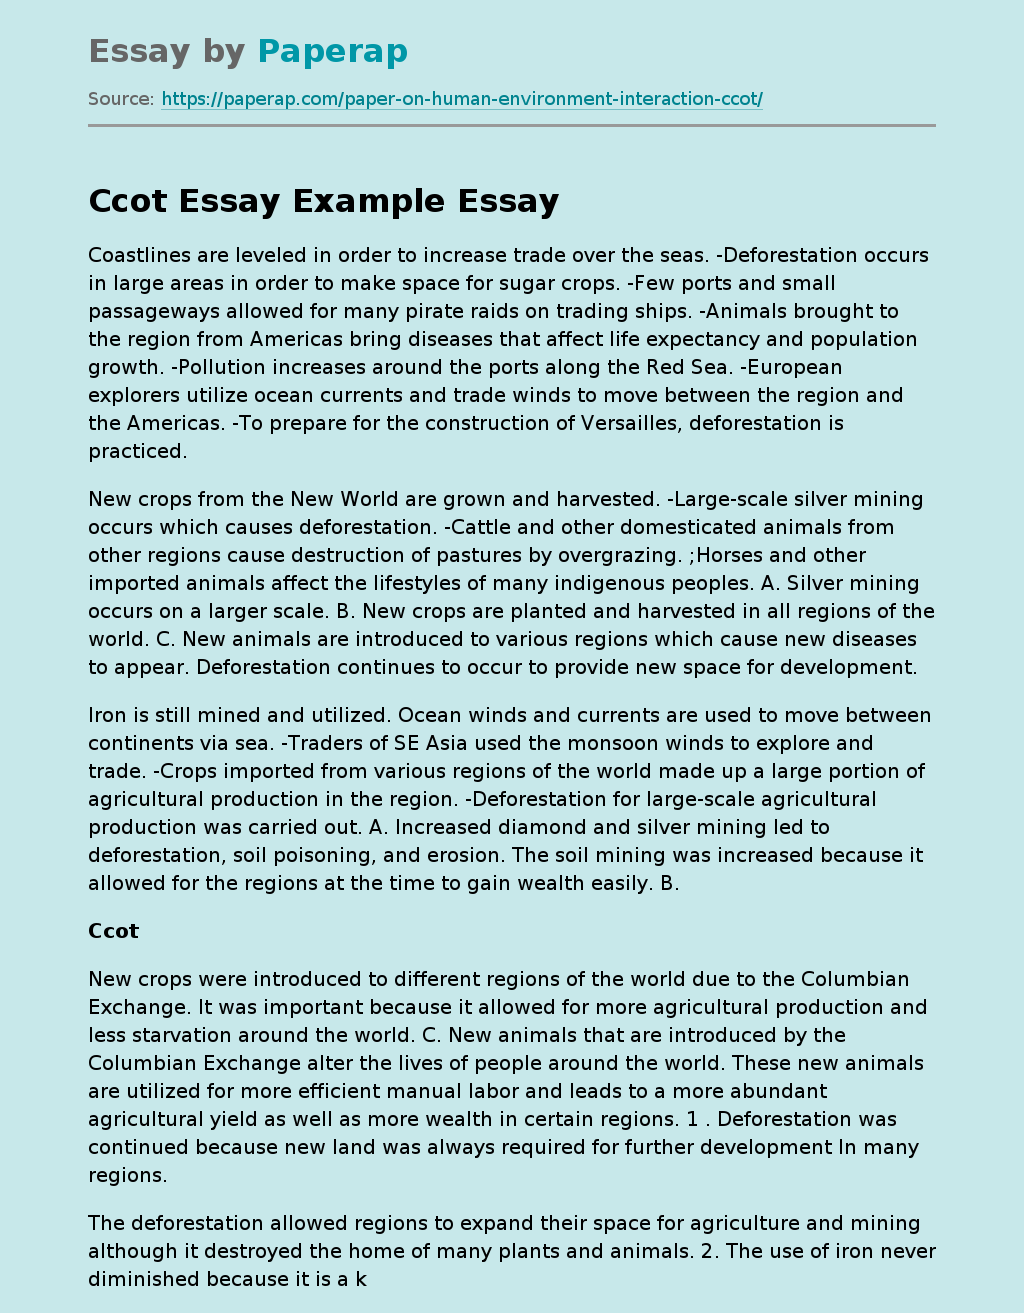 Ccot Essay Example